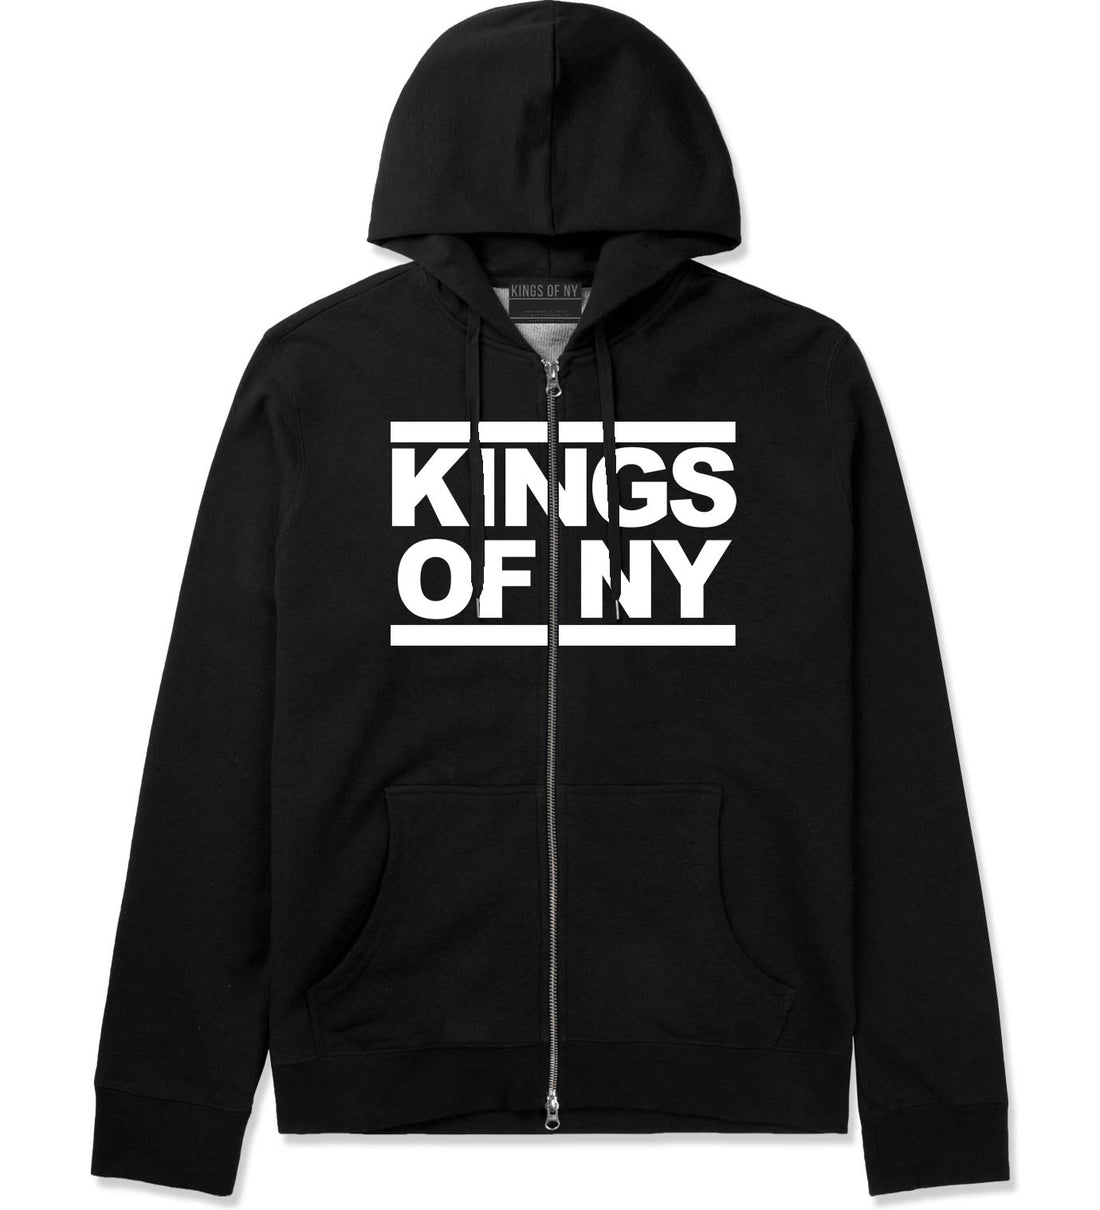 Kings Of NY Run DMC Logo Style Zip Up Hoodie in Black By Kings Of NY